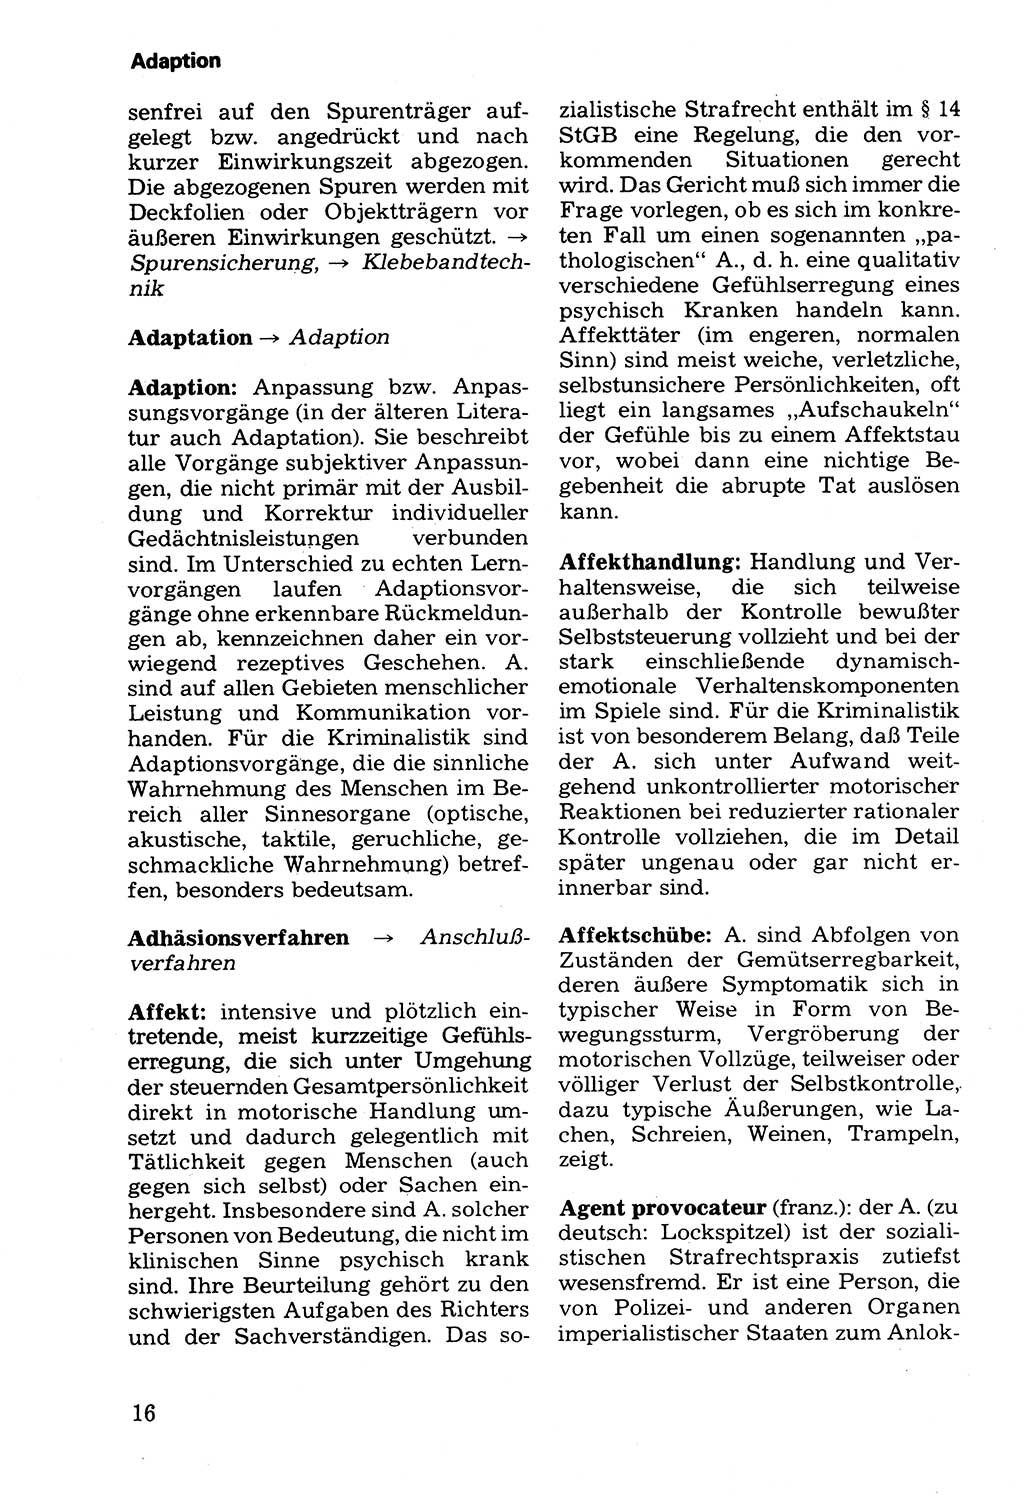 Wörterbuch der sozialistischen Kriminalistik [Deutsche Demokratische Republik (DDR)] 1981, Seite 16 (Wb. soz. Krim. DDR 1981, S. 16)